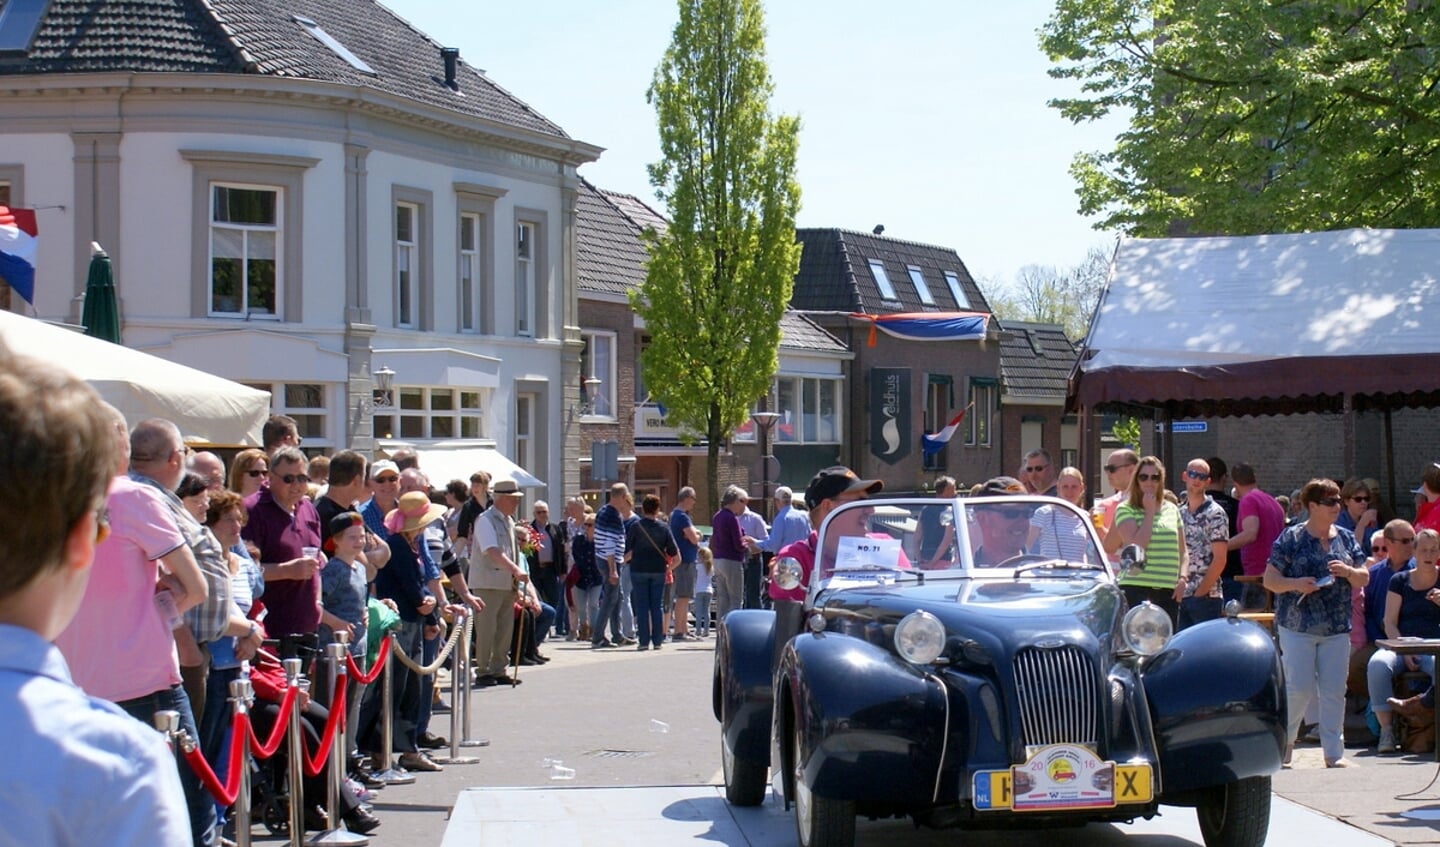 Meifeest in Aalten met oldimershow op Hemelvaartsdag. Foto: PR